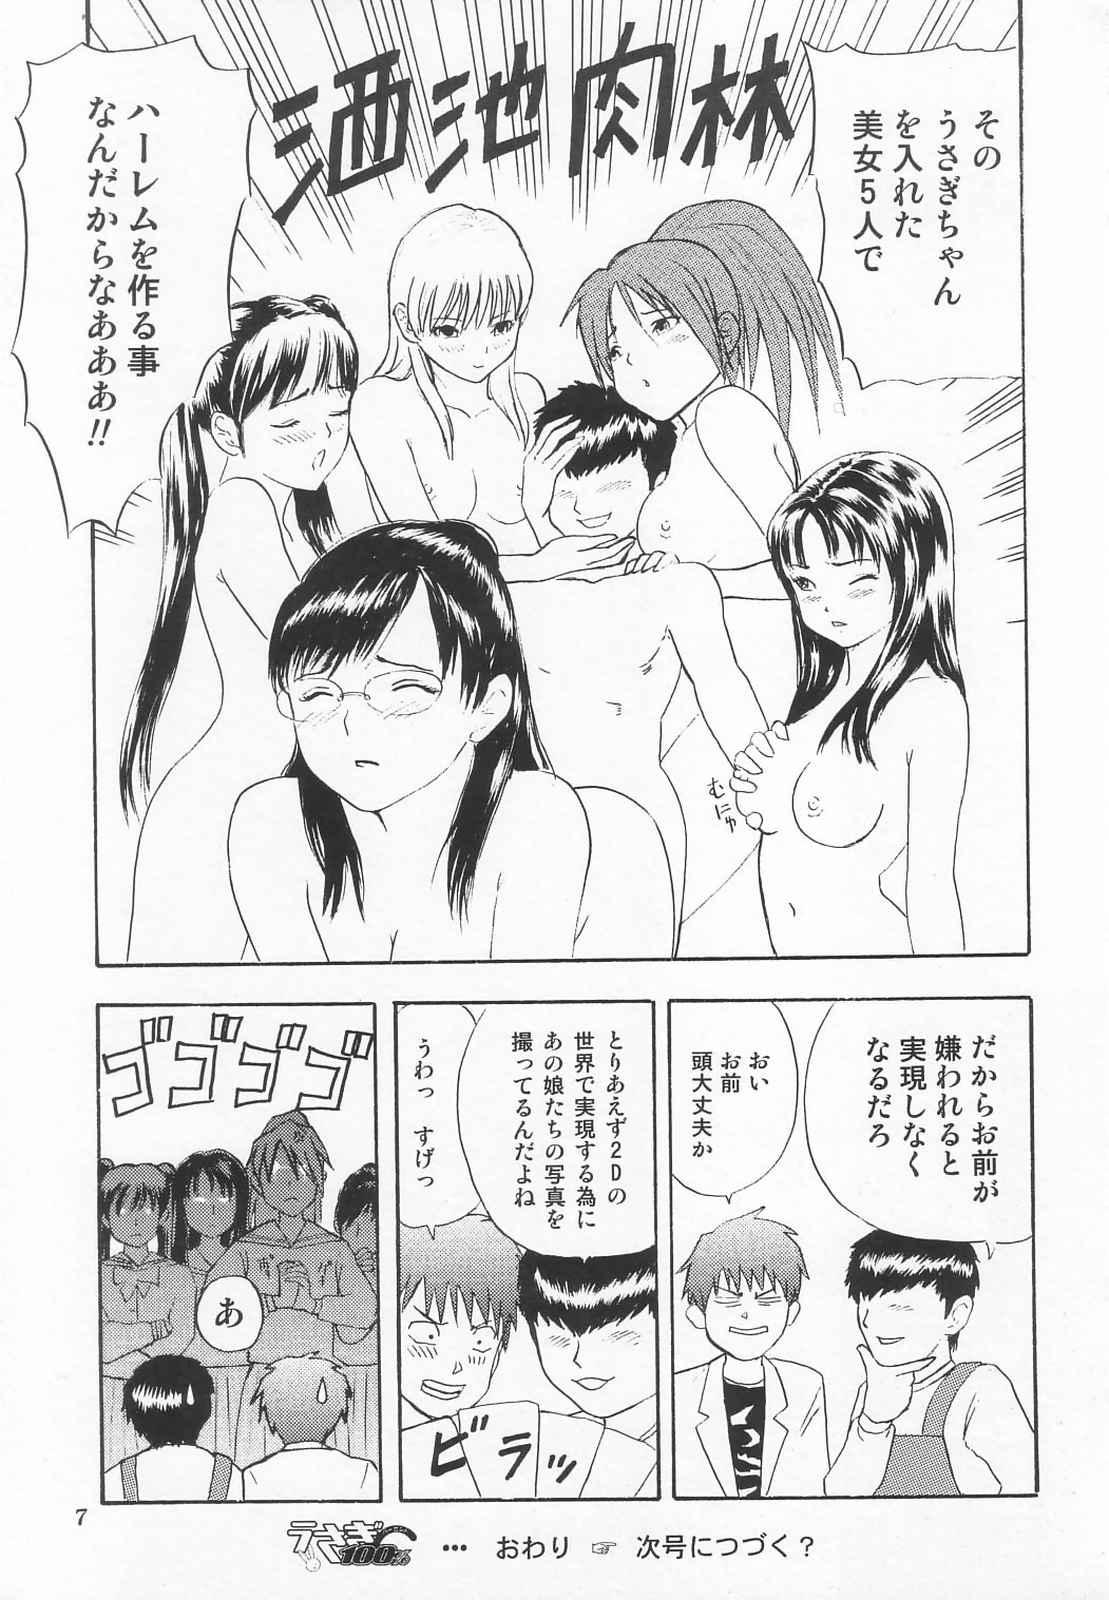 Storyline Tokusatsu Magazine x 2003 Fuyu Gou - Sailor moon Ichigo 100 Hot Pussy - Page 9